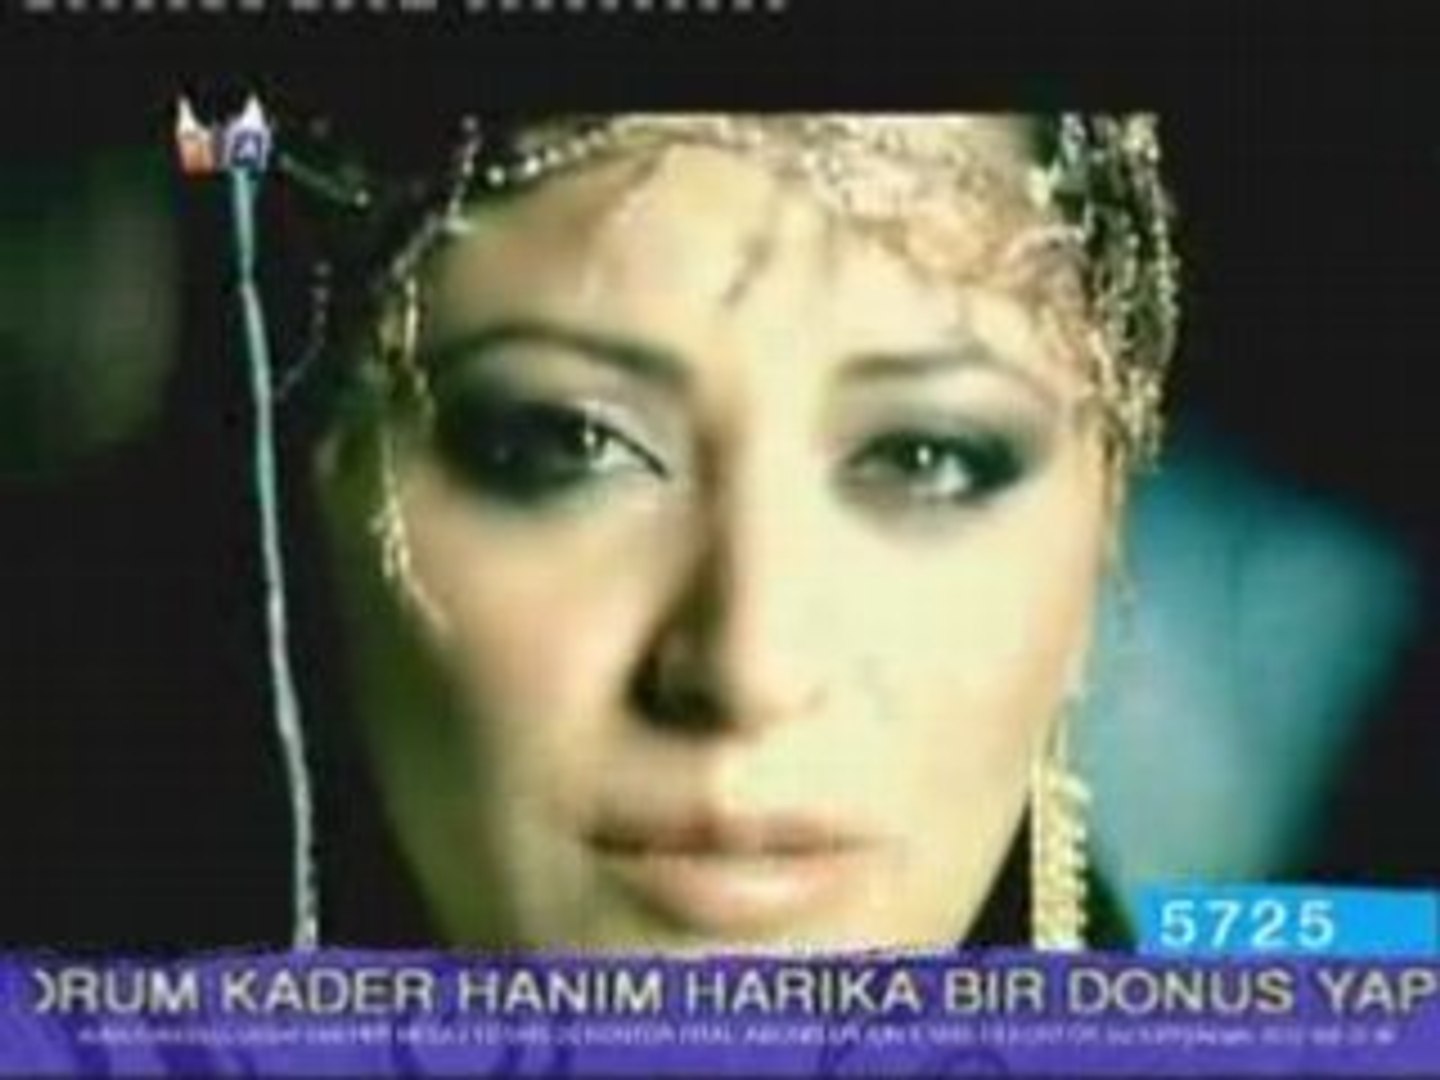 Zara - Tez Gel Yarim yepyeni klip 2008 yeni klip - Vidéo Dailymotion